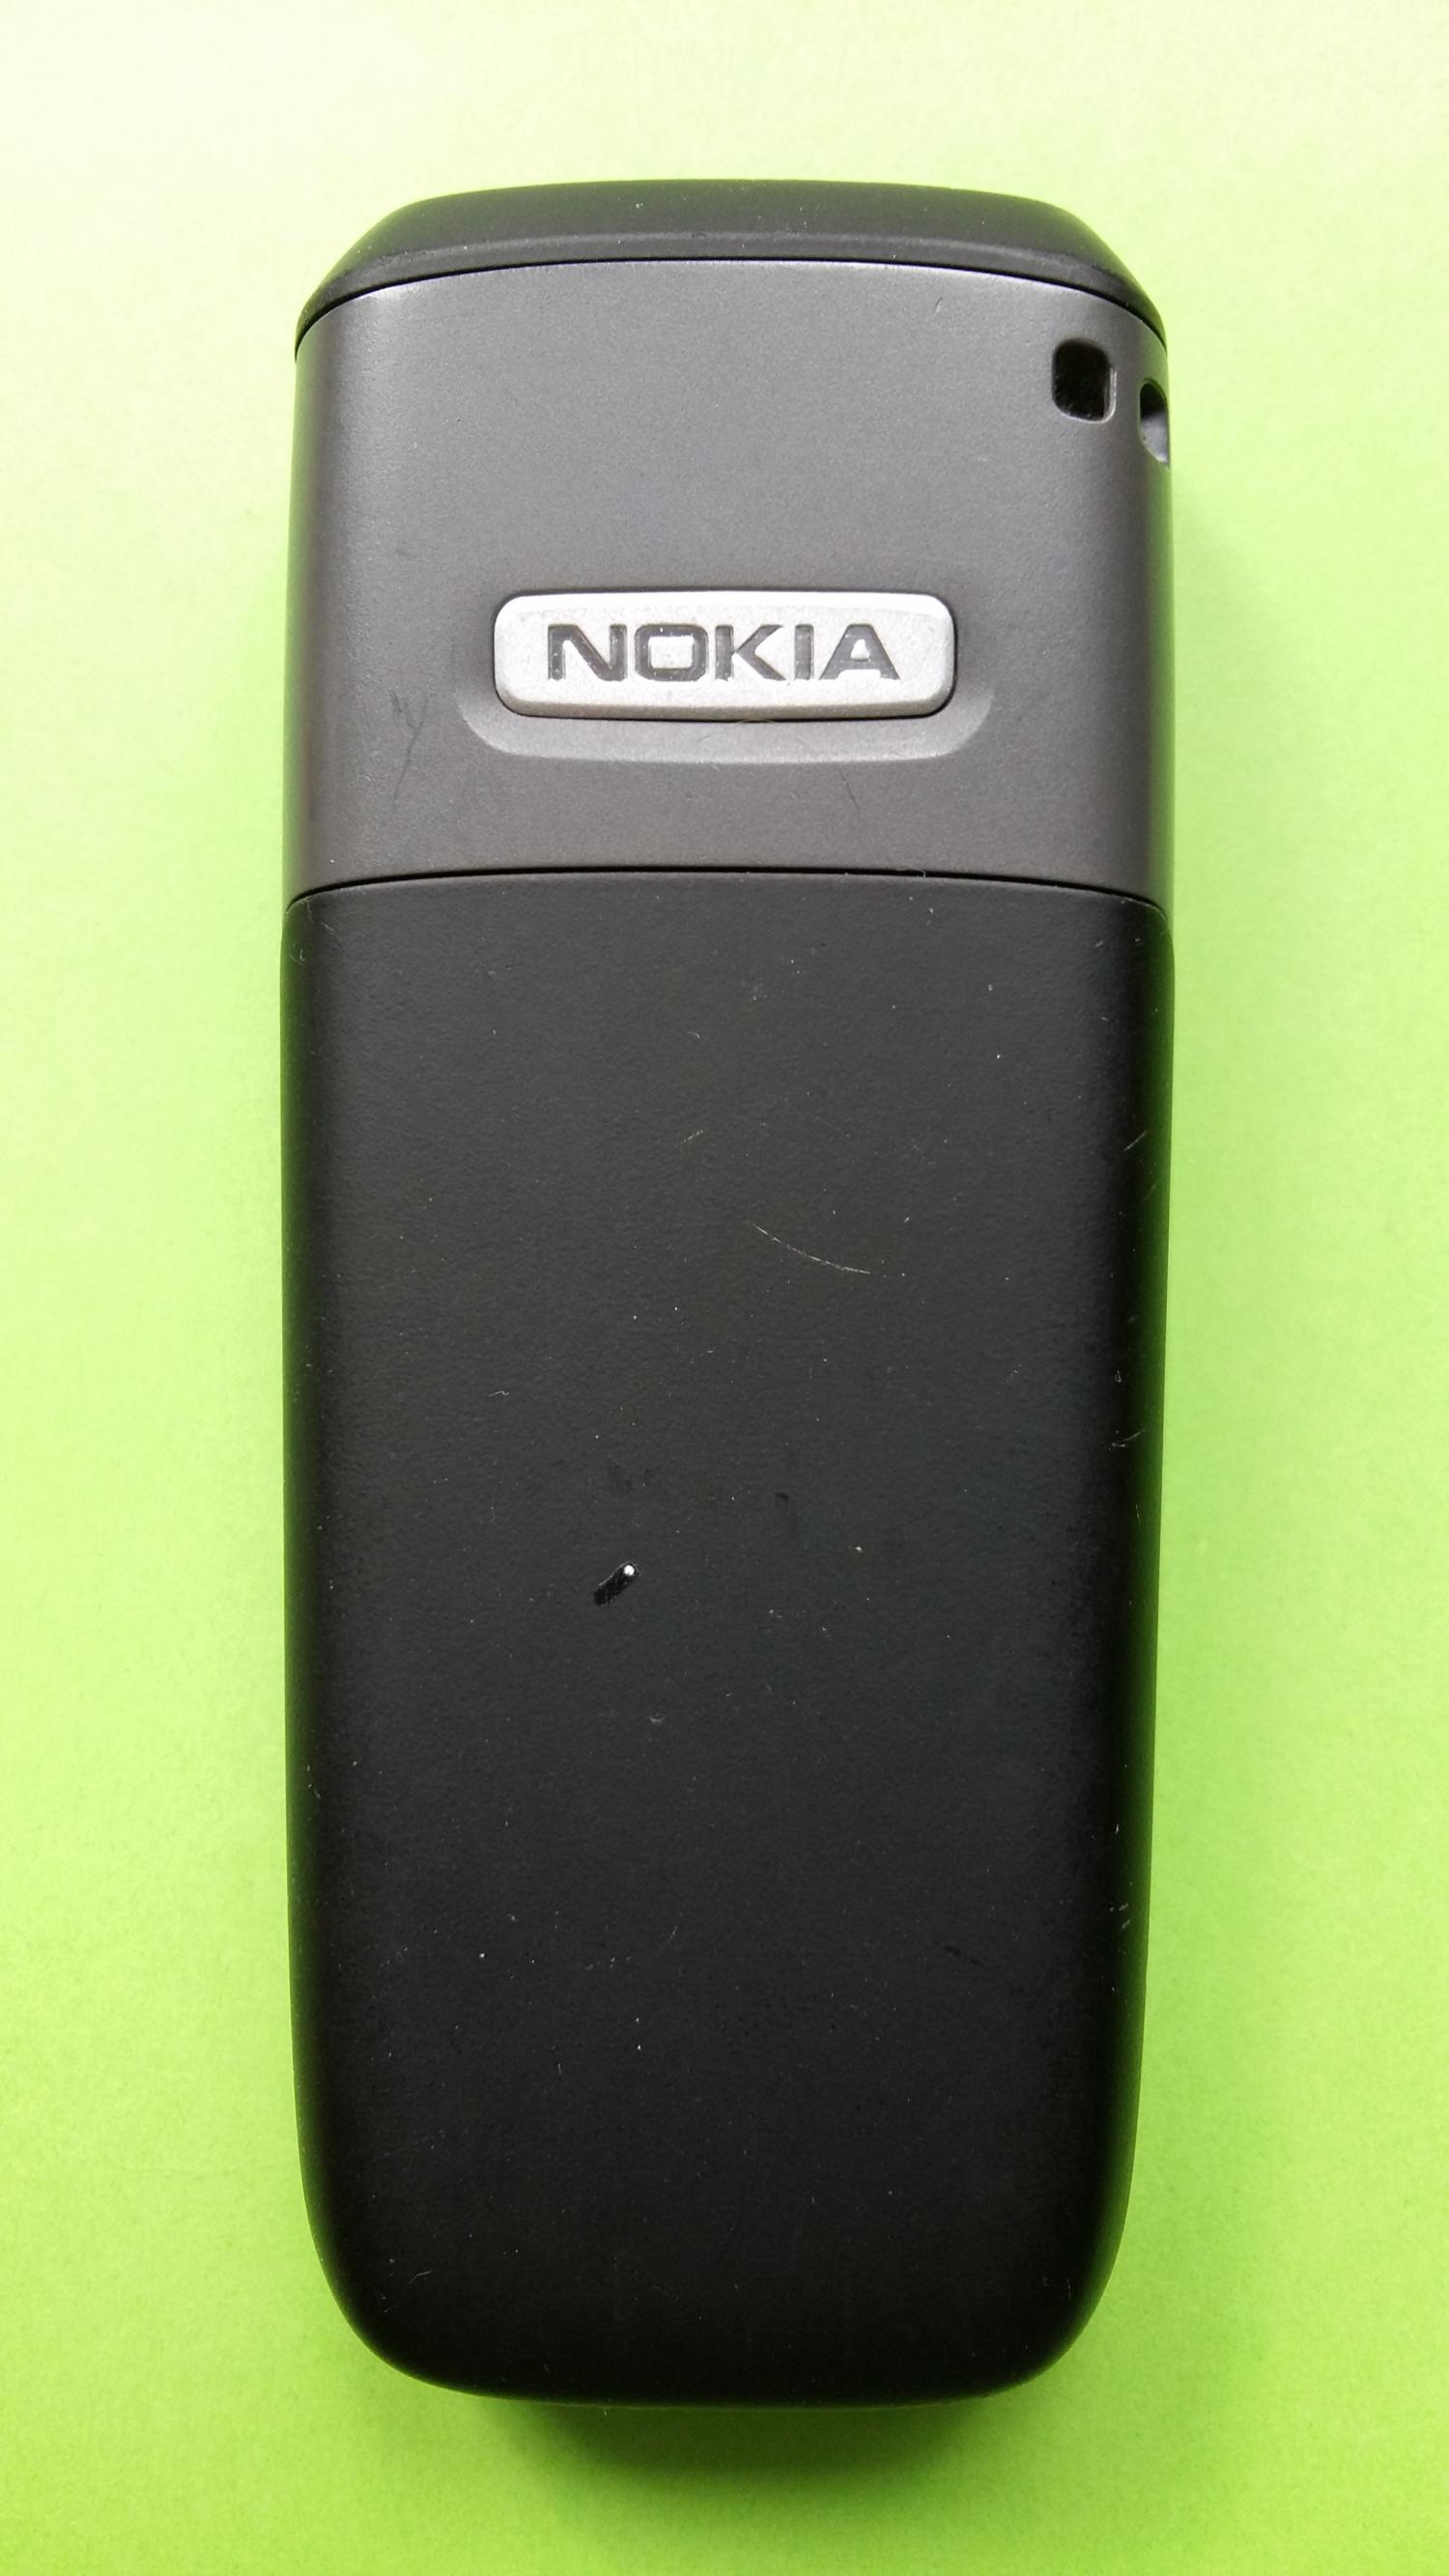 image-7331223-Nokia 2610 (3)2.jpg